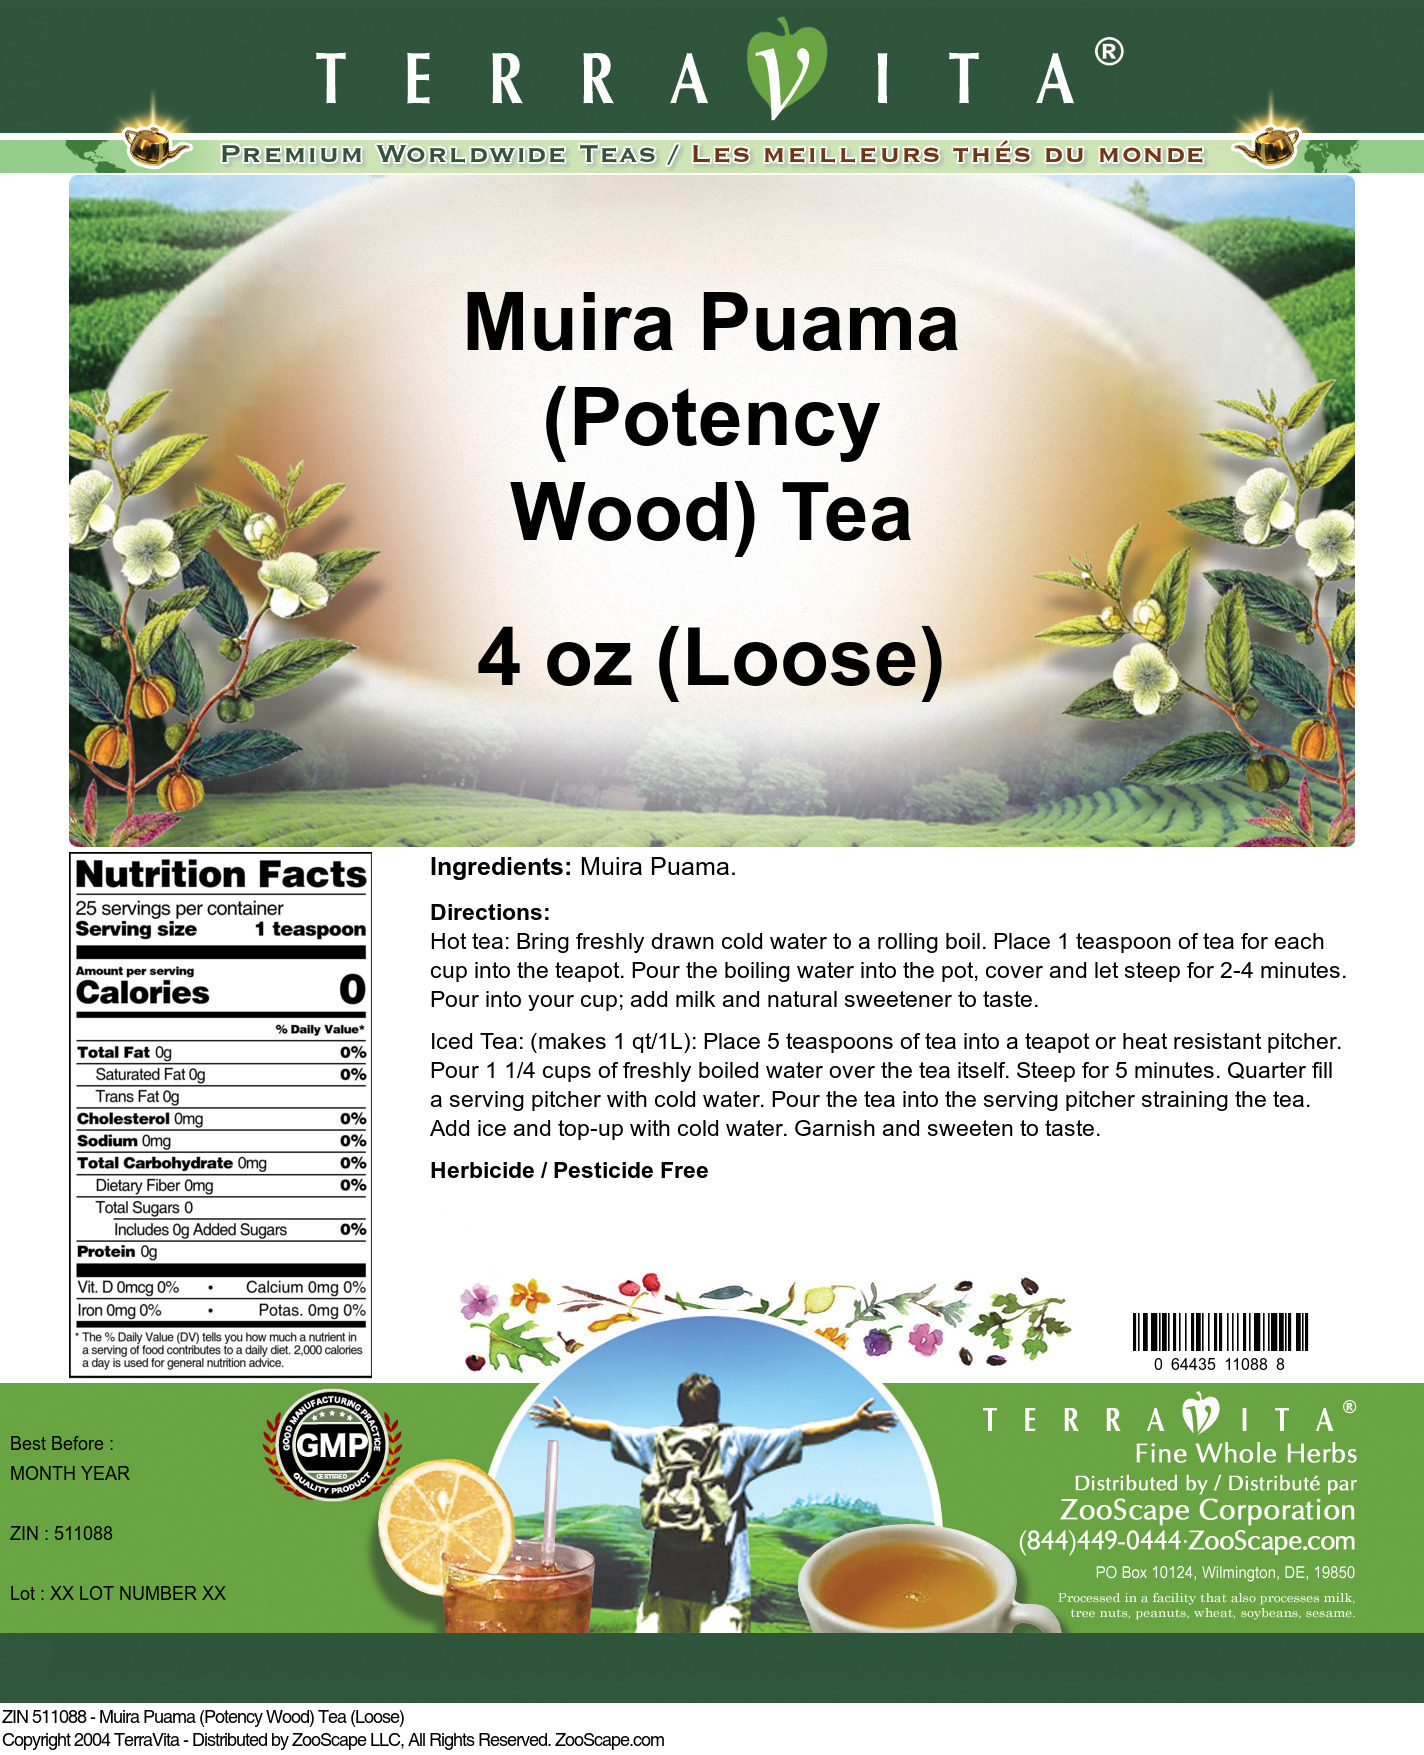 Muira Puama (Potency Wood) Tea (Loose) - Label